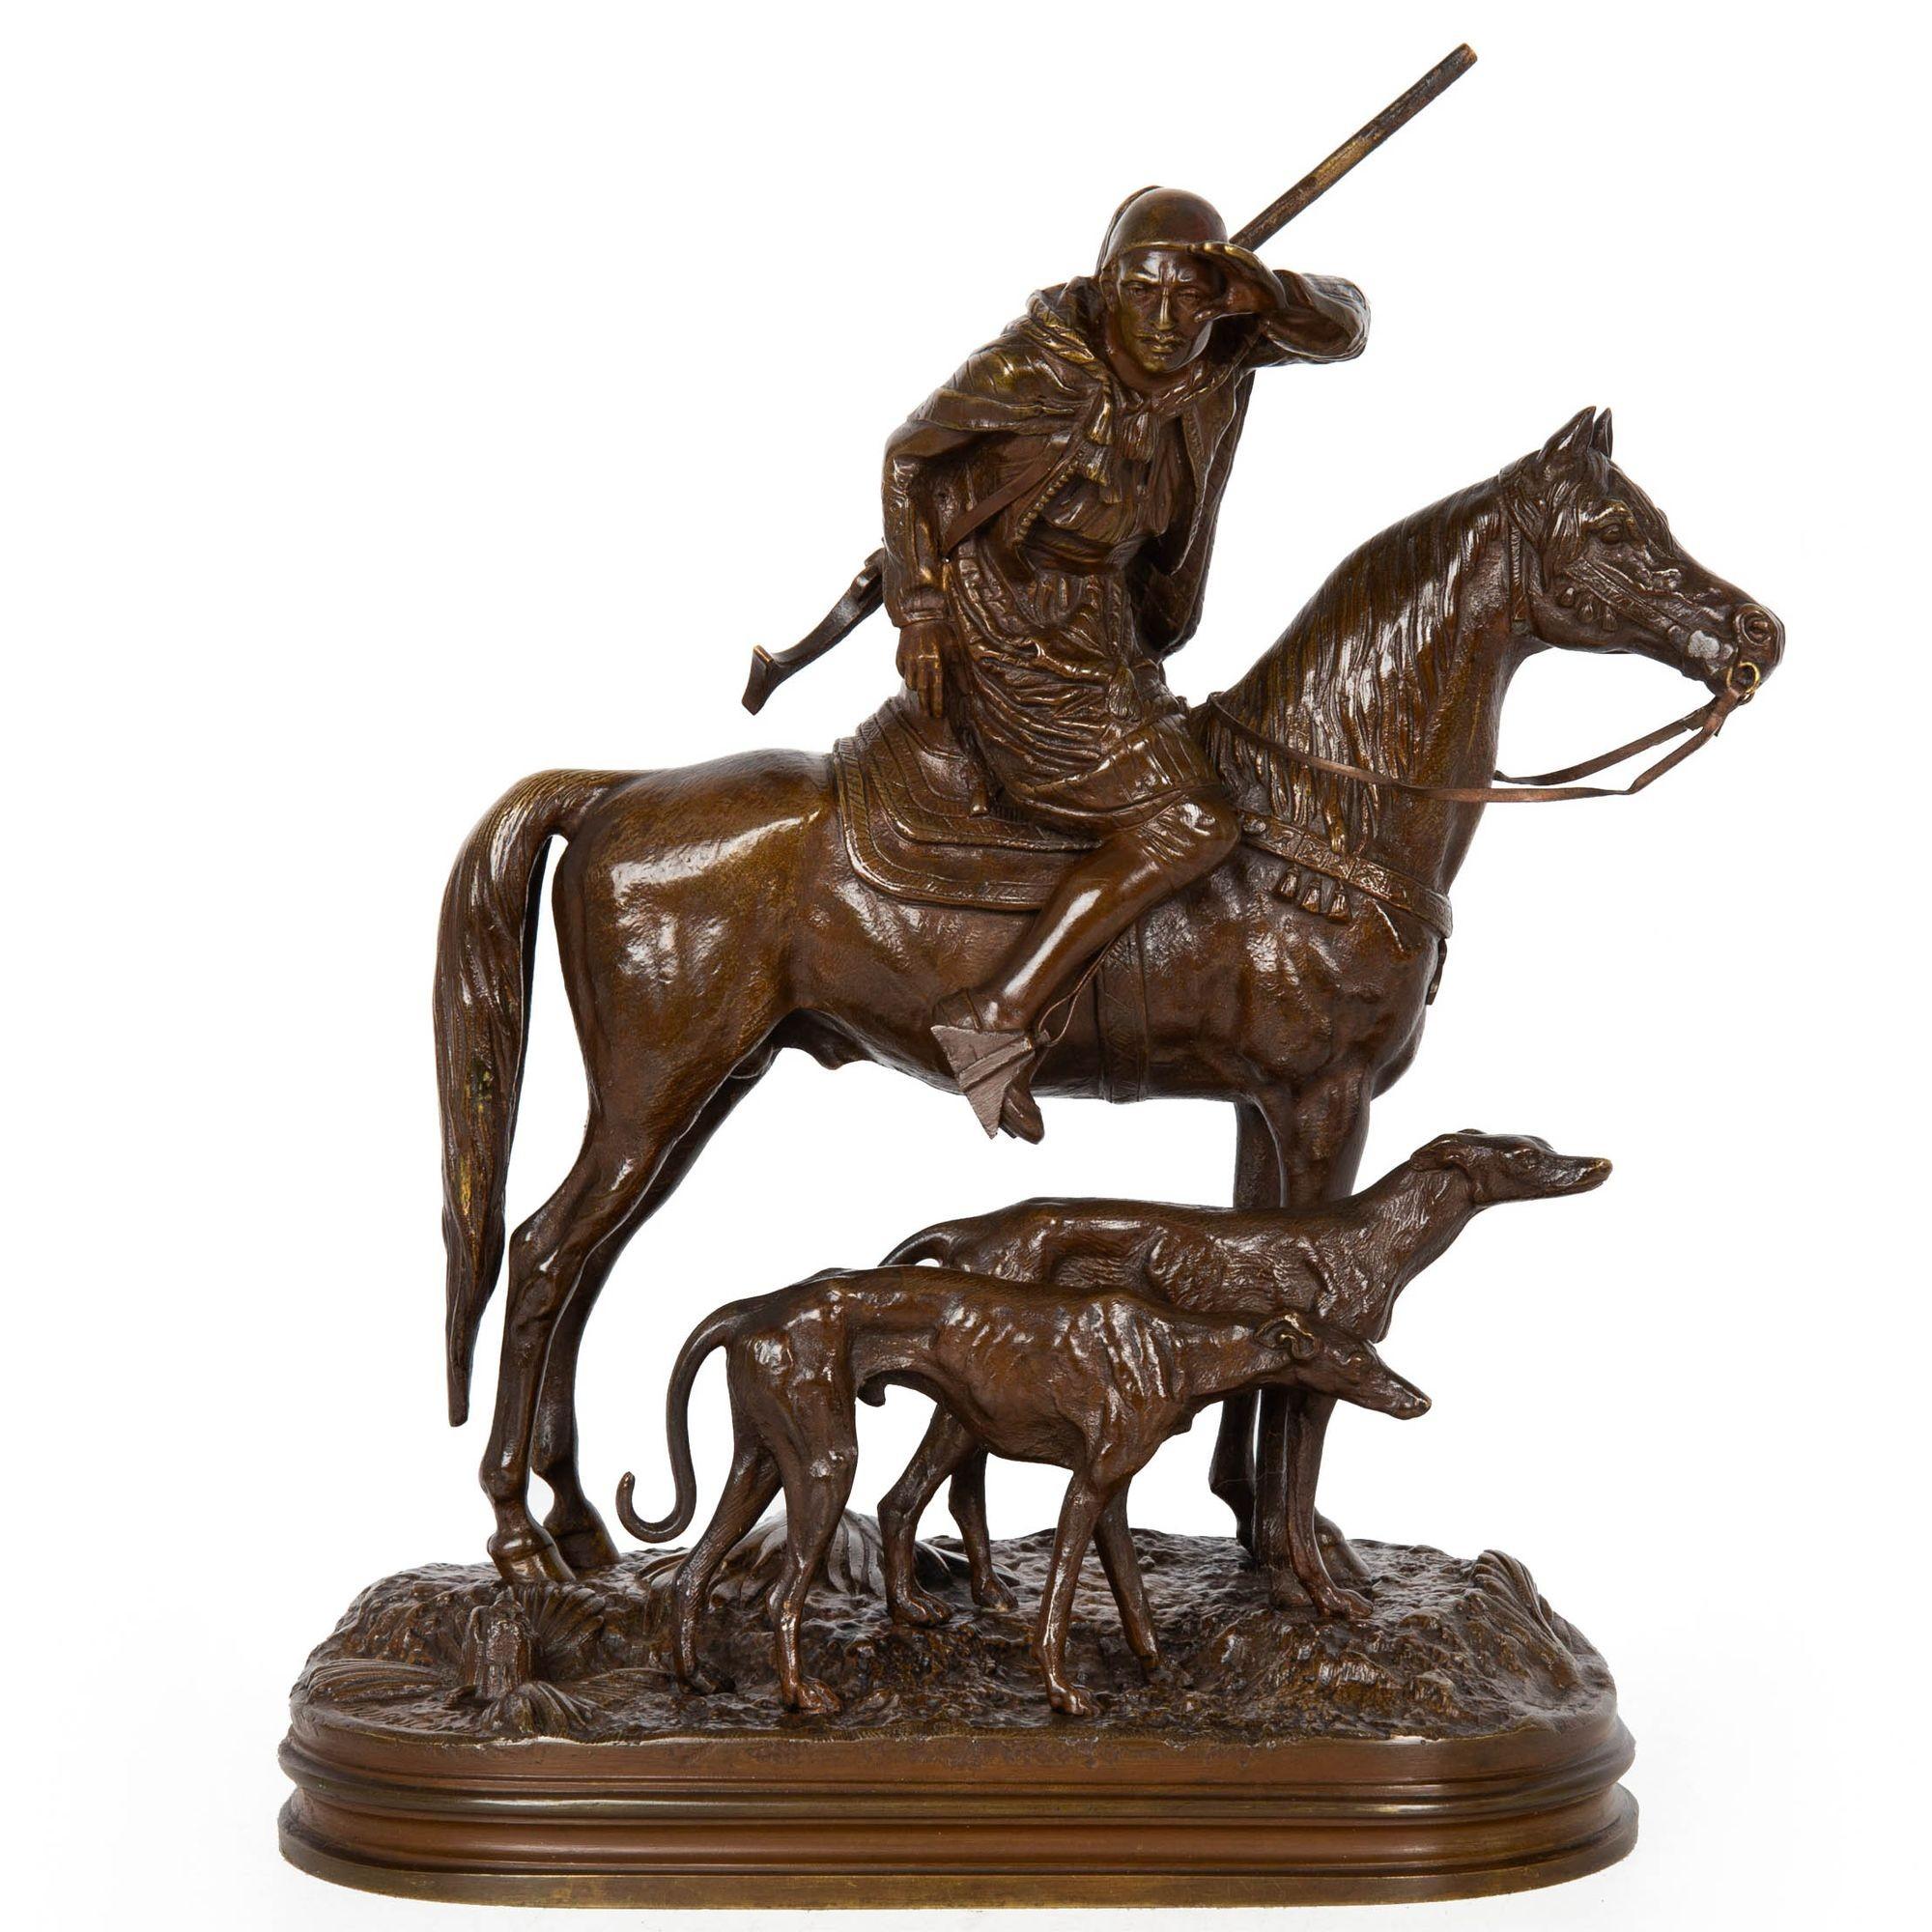 Ce modèle rare du Chasseur arabe à cheval de Dubucand est le plus petit format 